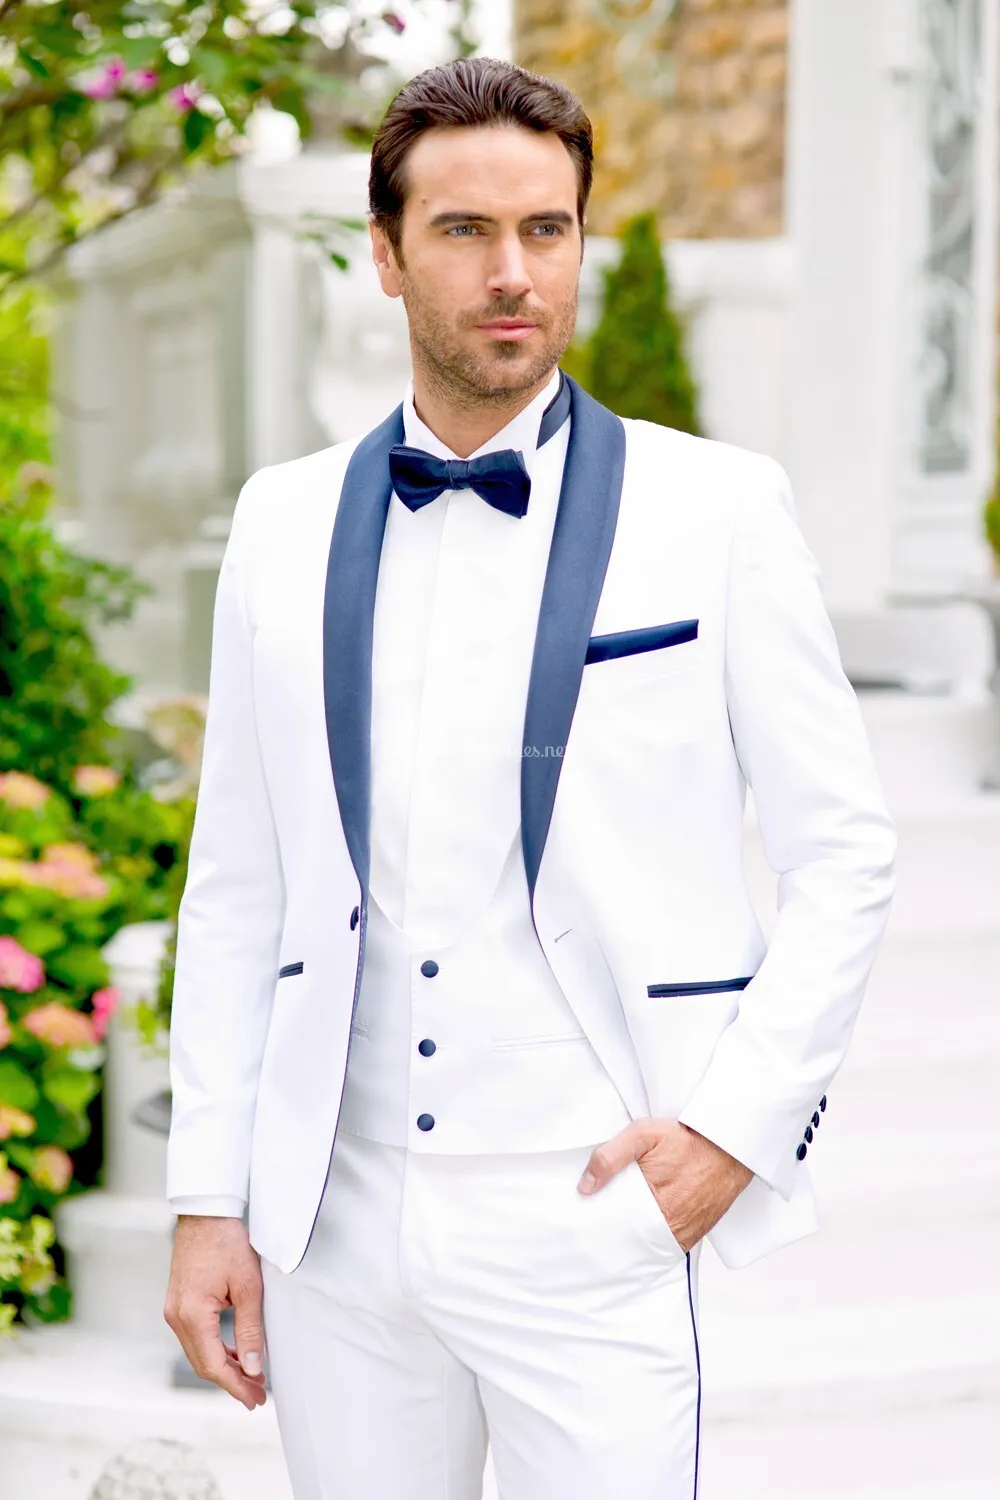 رفقاء العريس الأبيض البدلات الرسمية البحرية الأزرق التلبيب الرجال الدعاوى حفل زفاف أفضل رجل العريس (سترة + سروال + سترة)